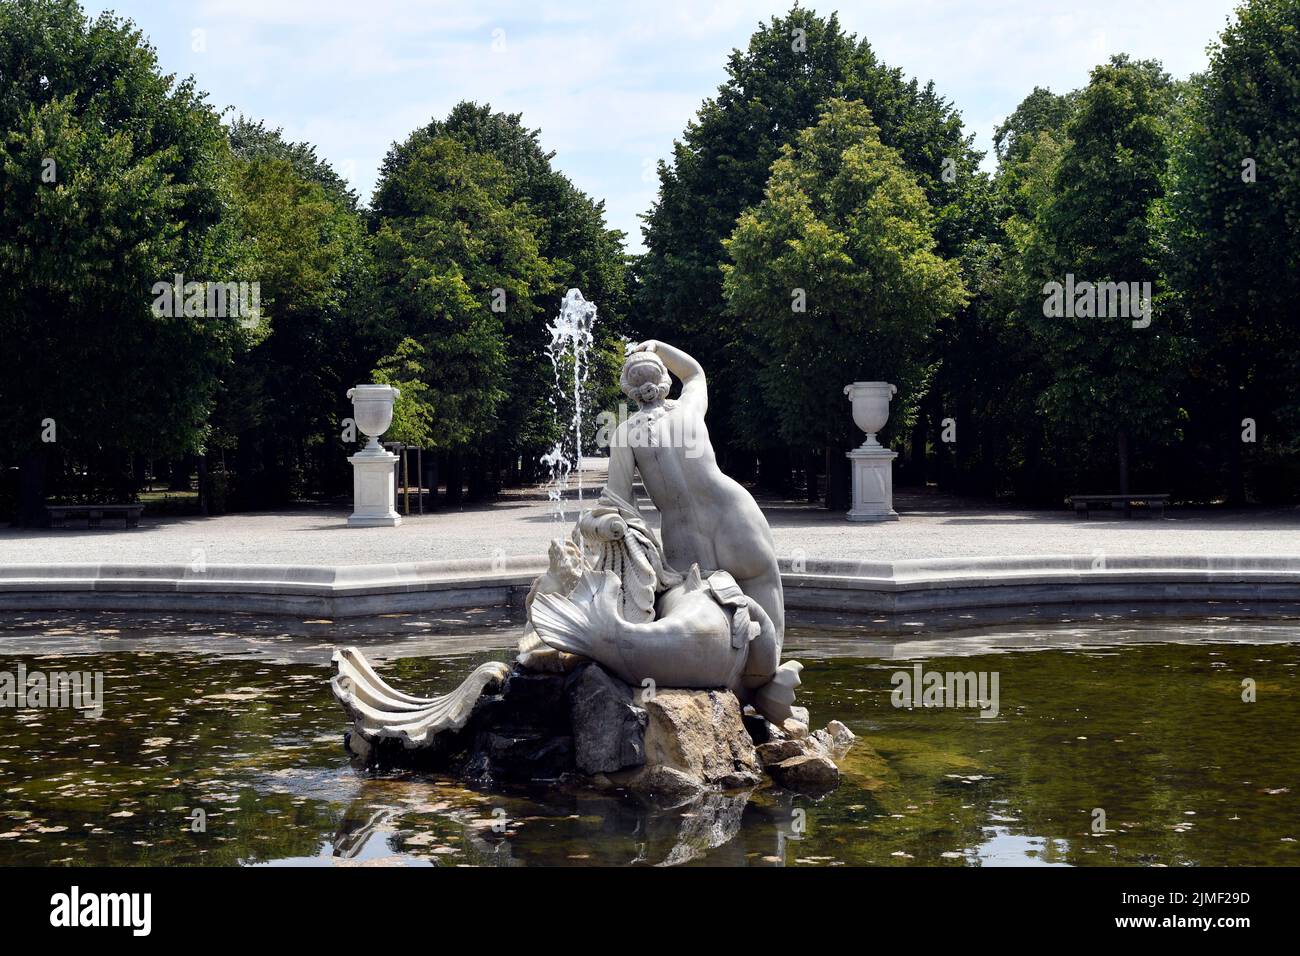 Wien, Österreich - 01. August 2022: Westnaiadbrunnen mit Skulptur - ehemalige Residenz der Habsburger Herrscher und heute UNESCO-Weltkulturerbe S Stockfoto